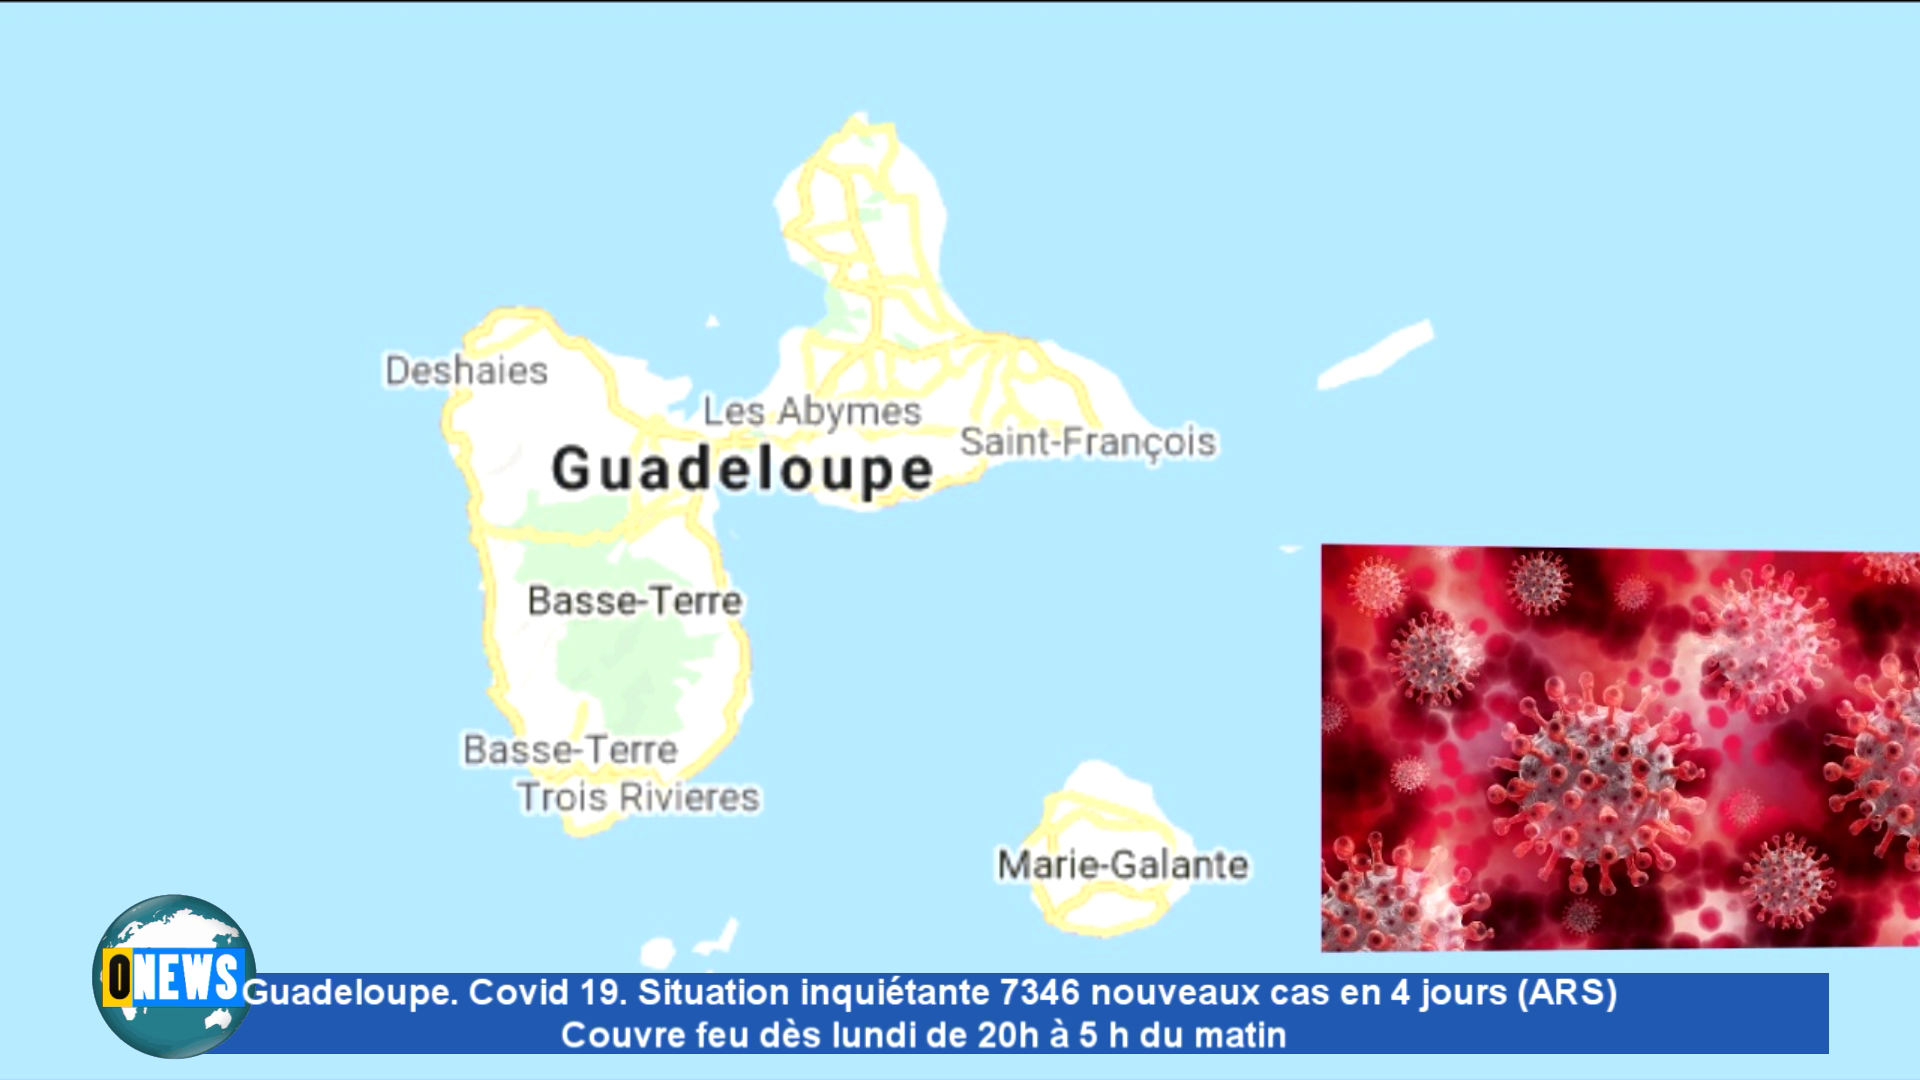 Guadeloupe. Covid 19. Situation inquiétante 7346 nouveaux cas en 4 jours (ARS) Couvre feu dès lundi de 20h à 5 h du matin